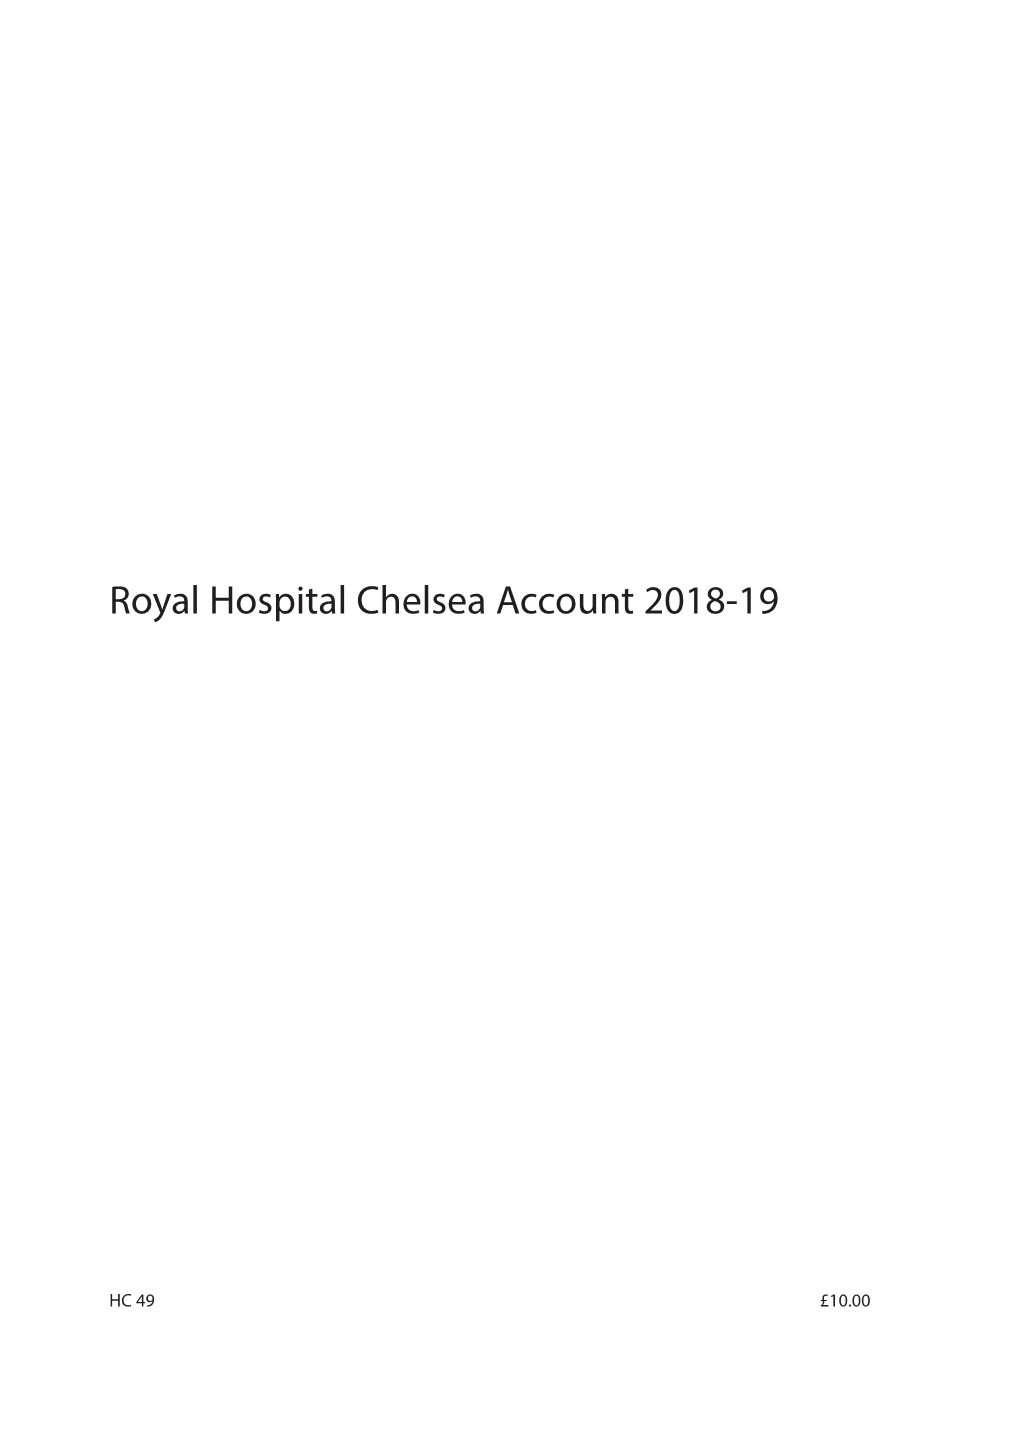 Royal Hospital Chelsea 2019.Indd